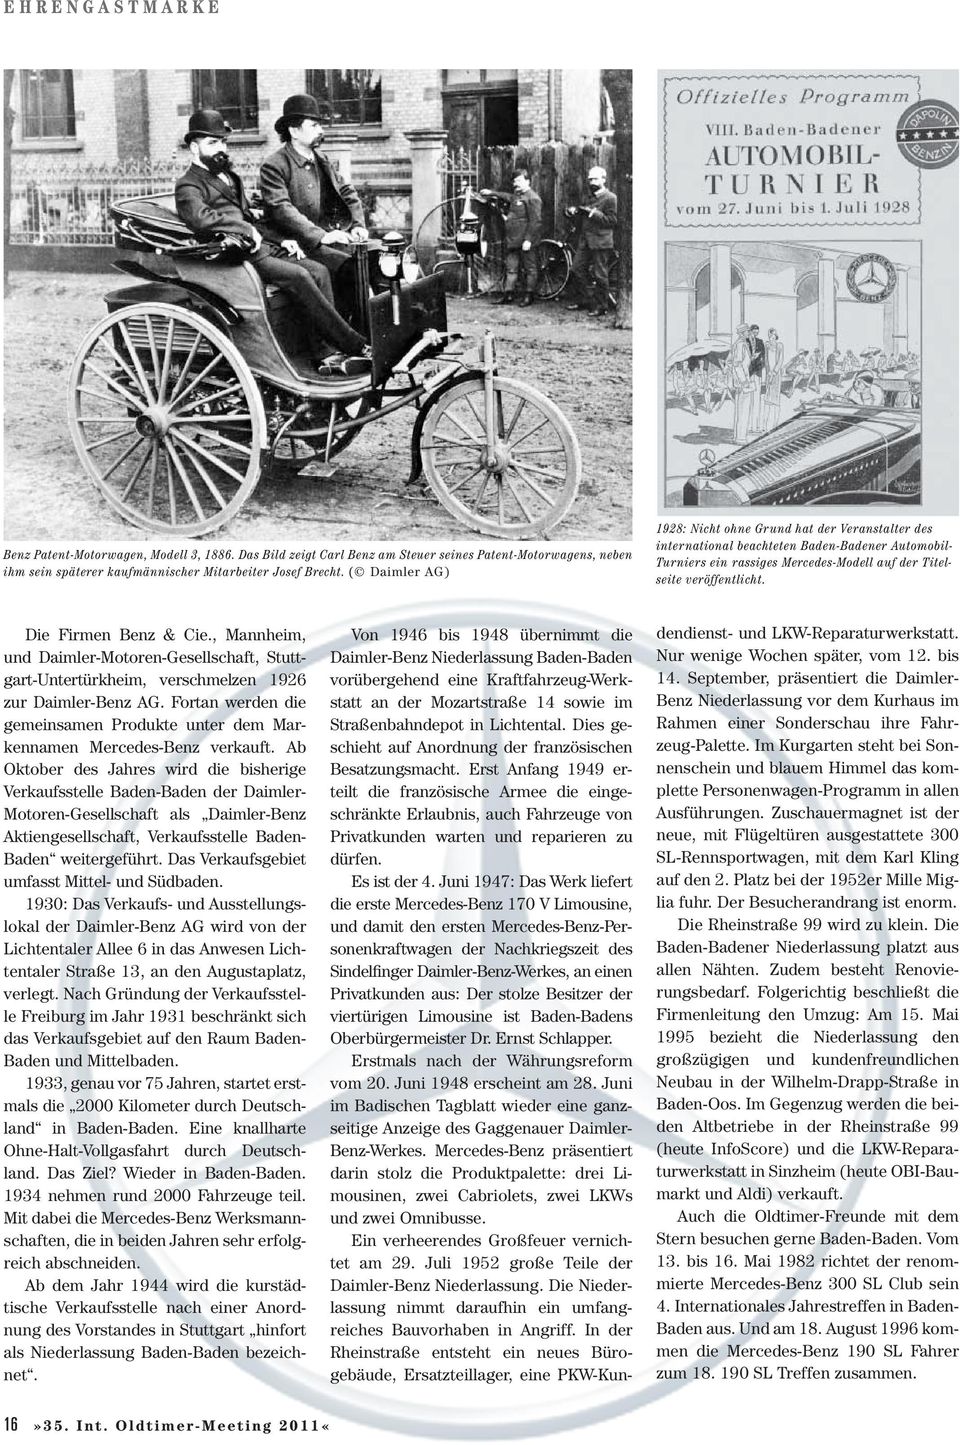 Die Firmen Benz & Cie., Mannheim, und Daimler-Motoren-Gesellschaft, Stuttgart-Untertürkheim, verschmelzen 1926 zur Daimler-Benz AG.